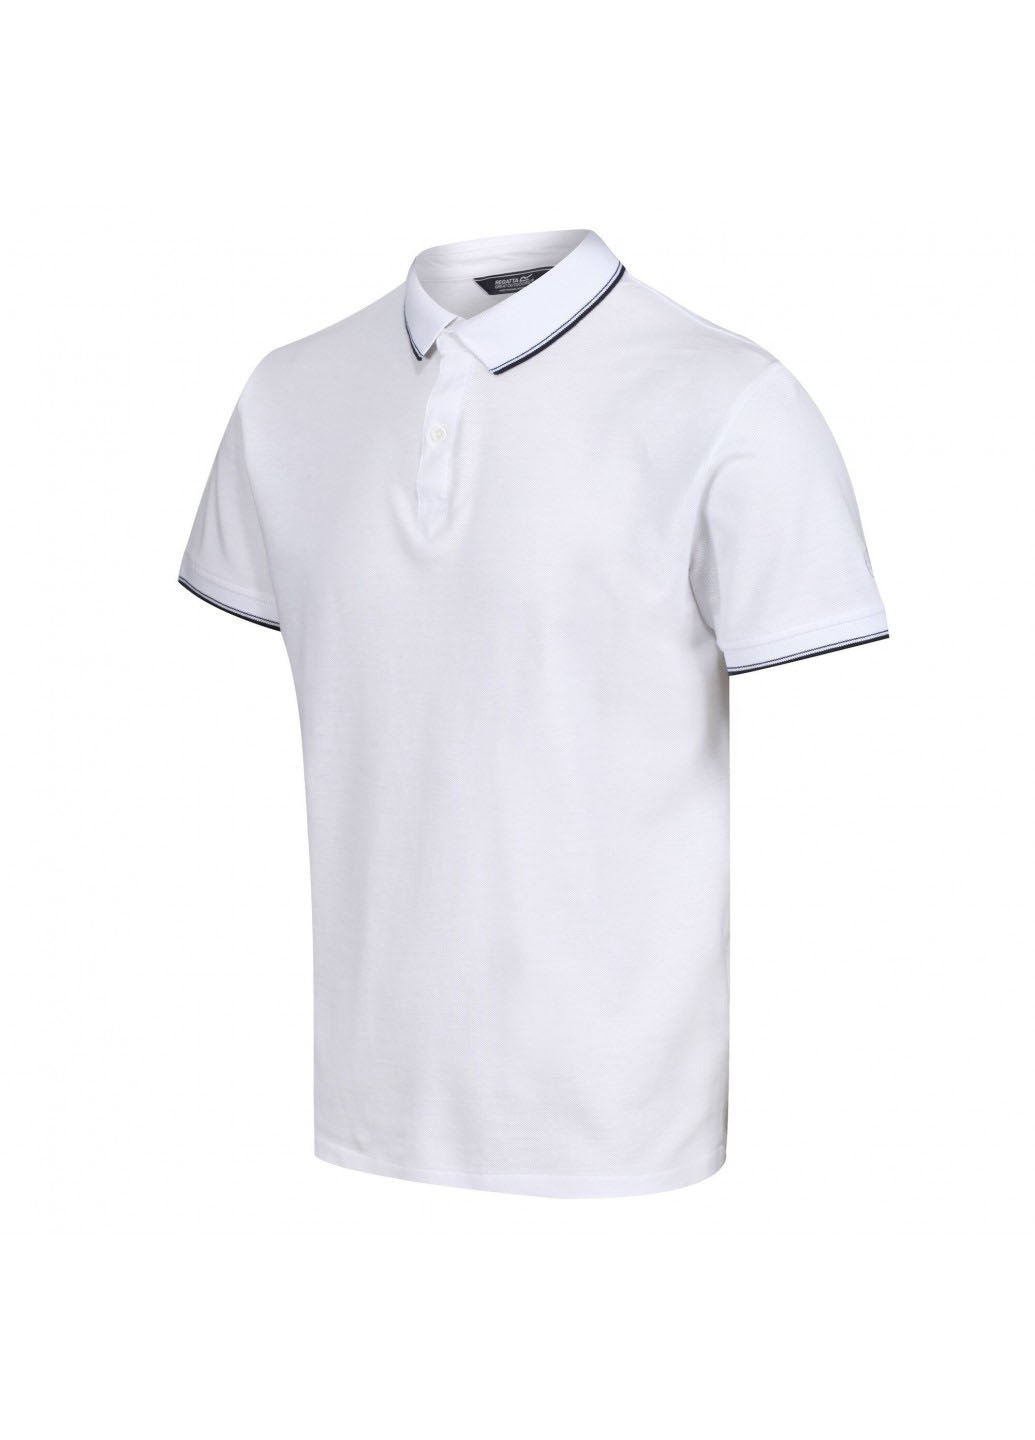 Белая футболка-поло для мужчин Regatta однотонная